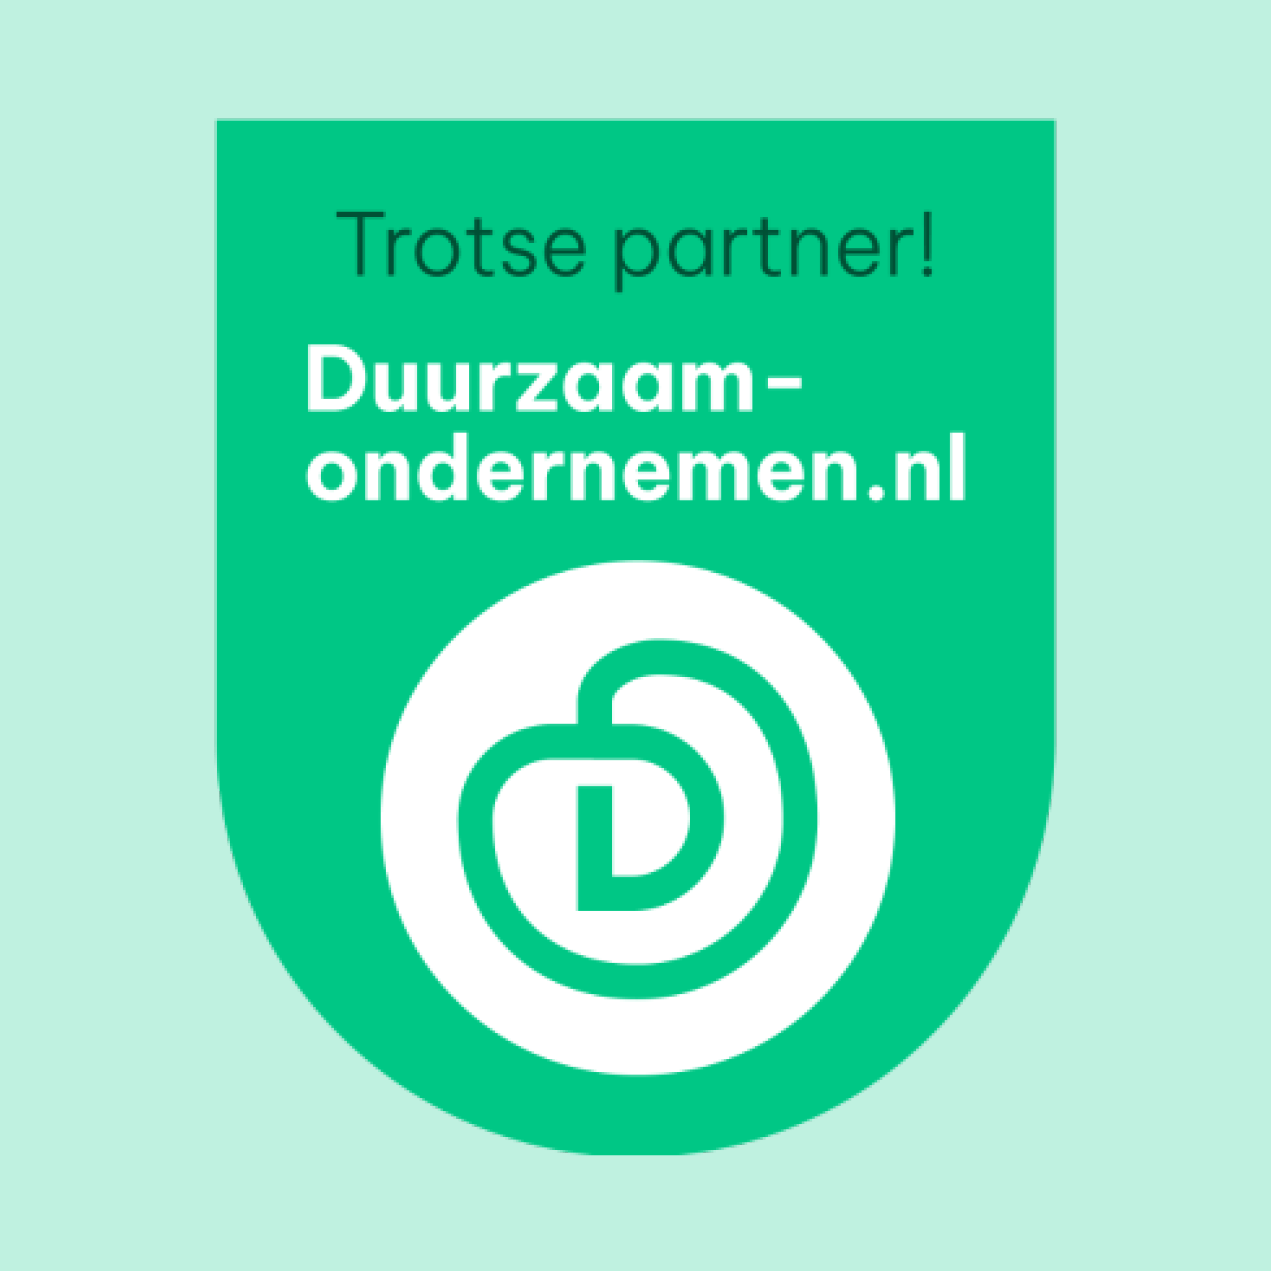 One meeting CSR partner - Duurzaamondernemen.nl